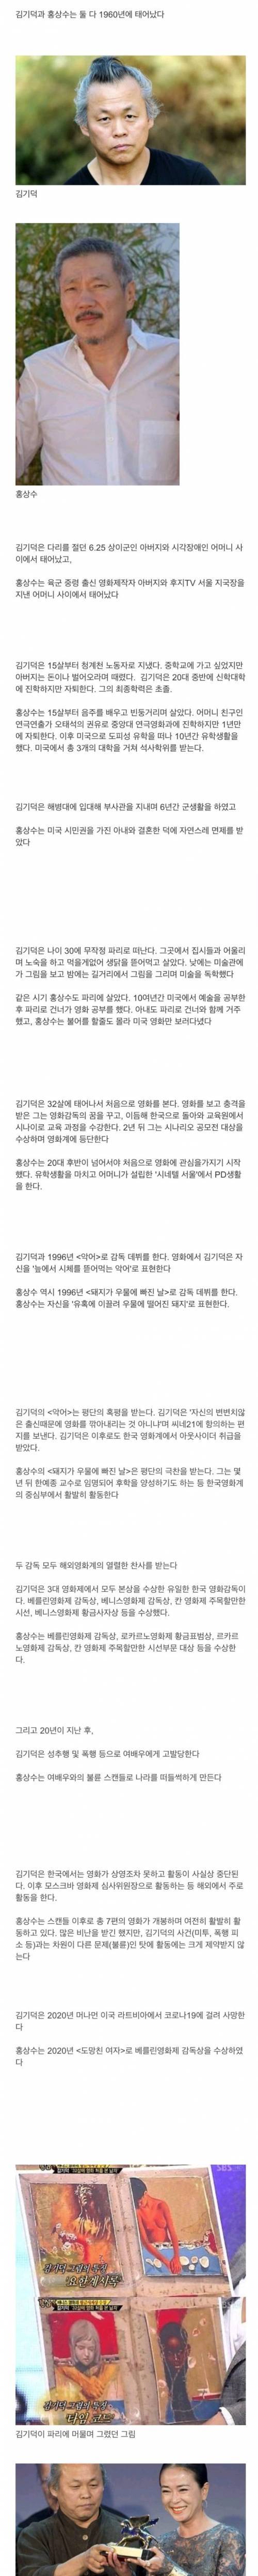 [스압] 김기덕감독과 홍상수감독의 삶.jpg